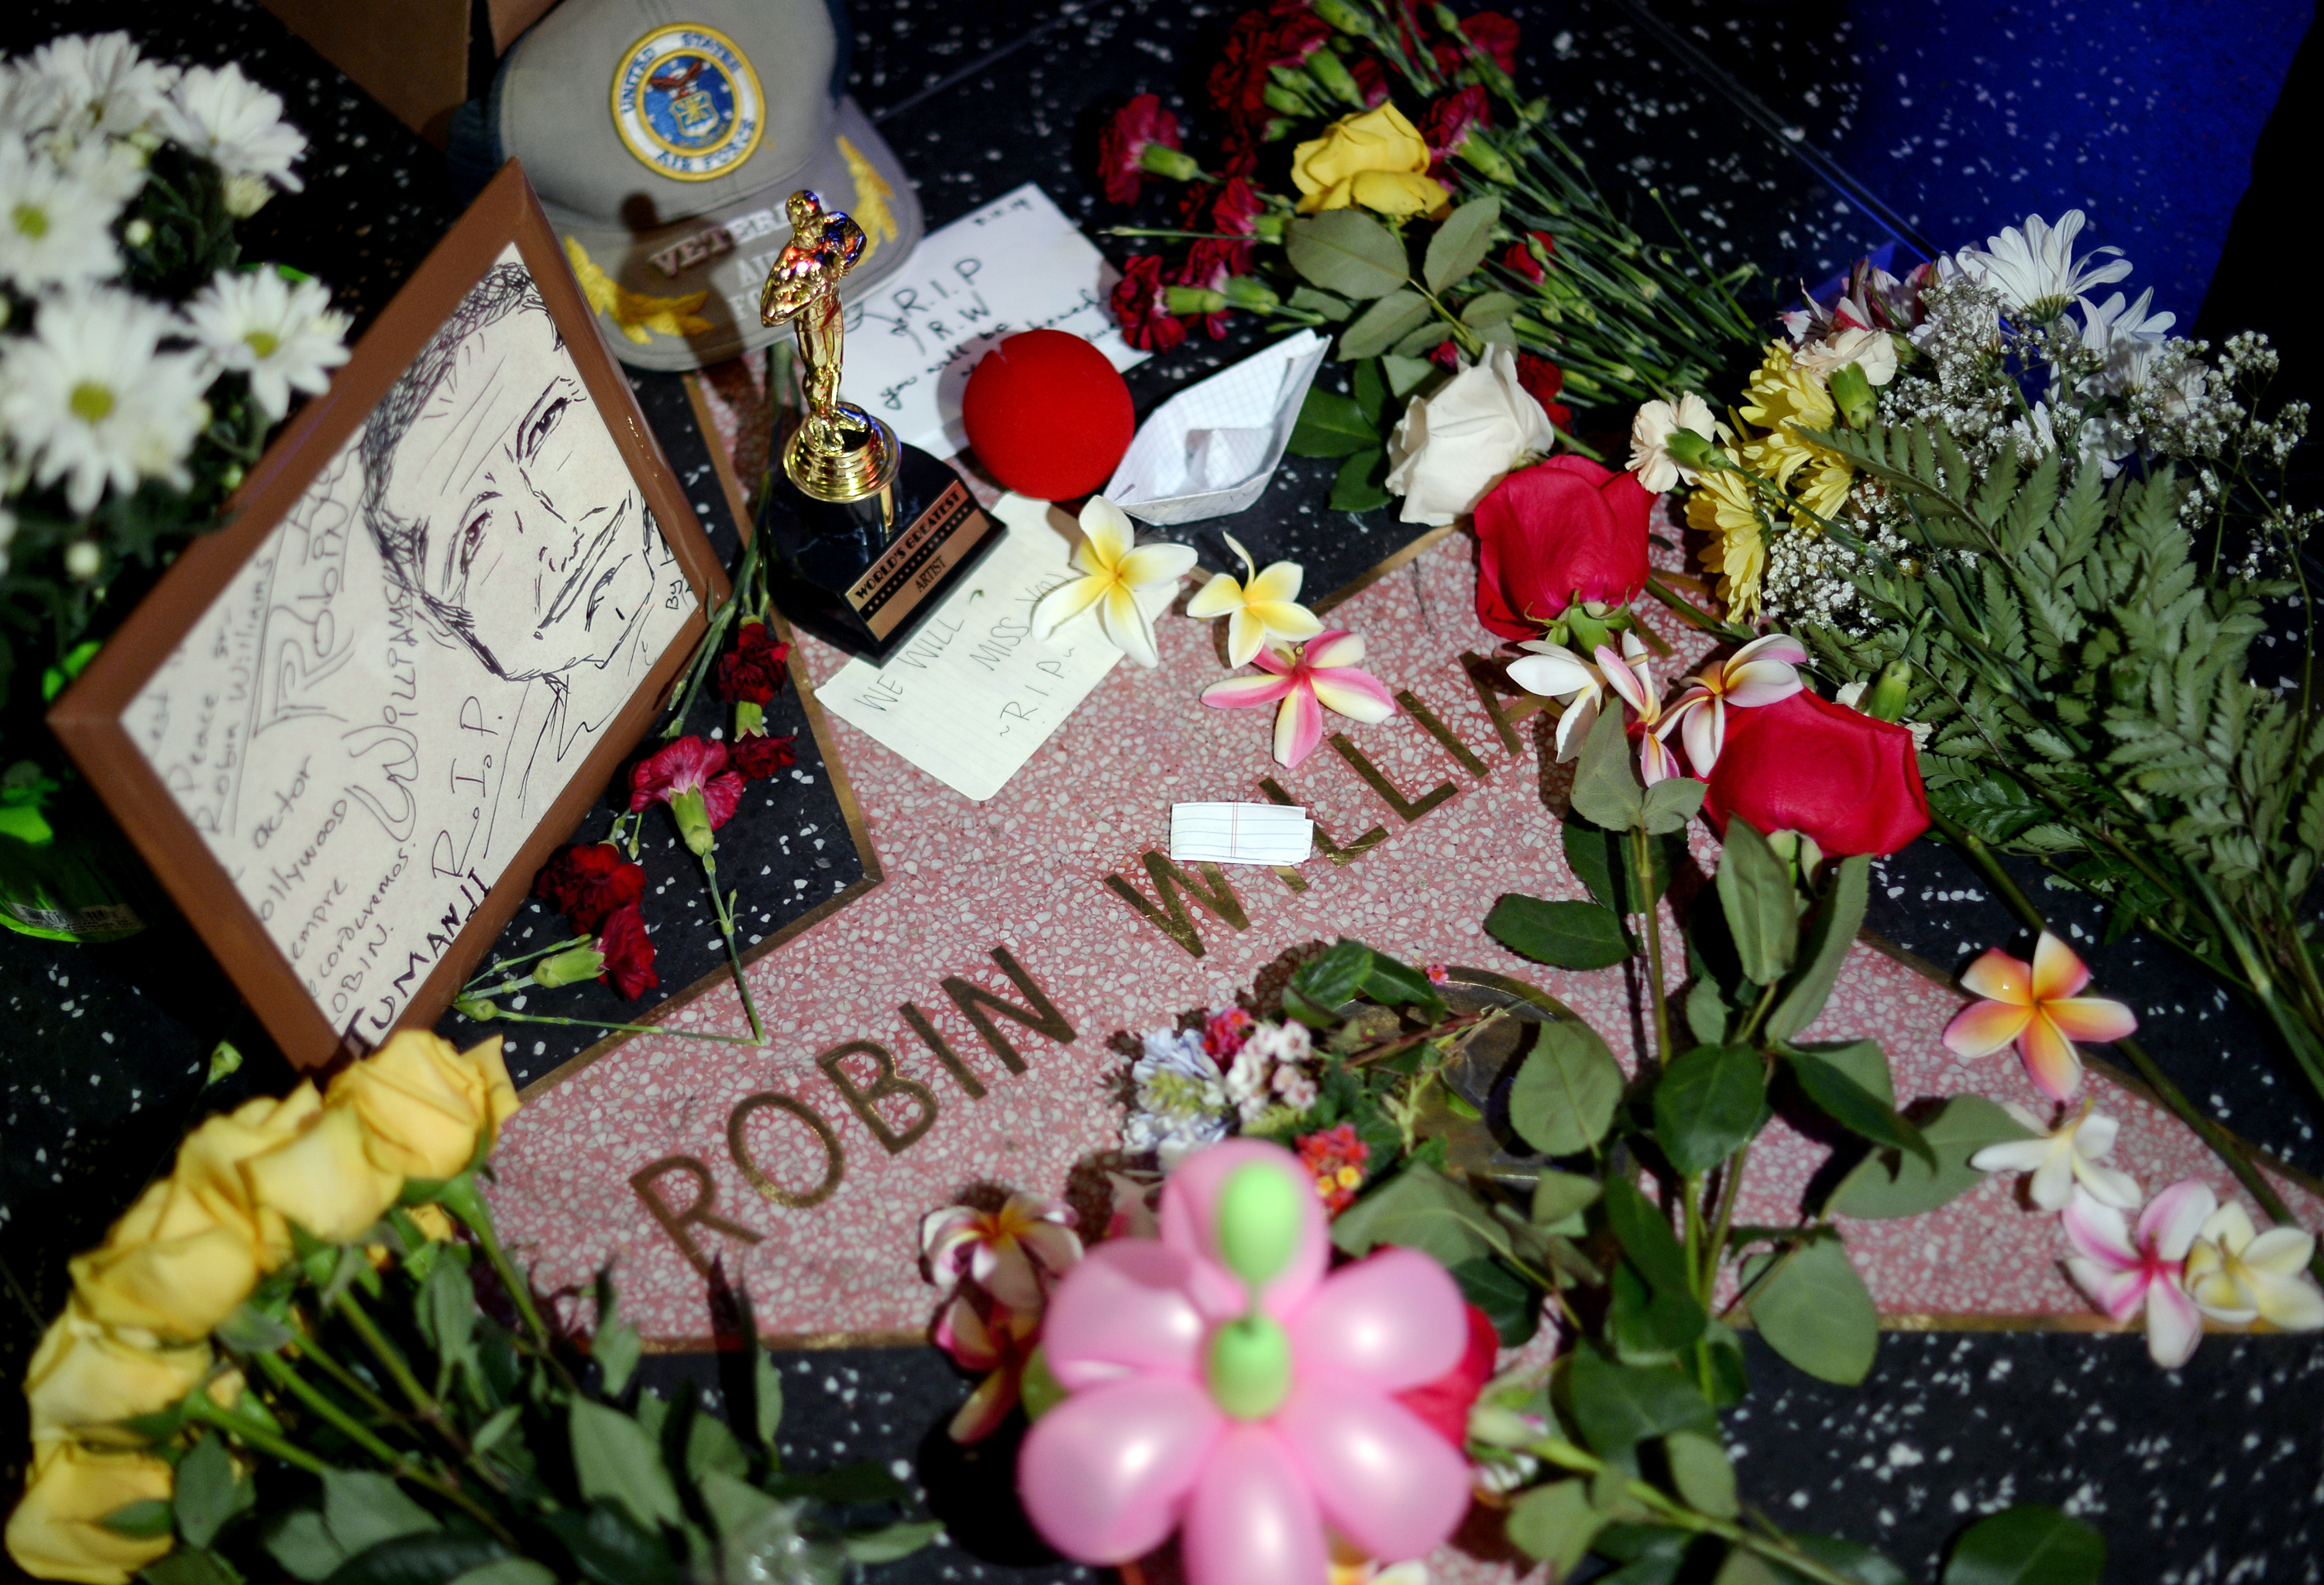 Ρόμπιν Ουίλιαμς: Σε αυτοκτονία αποδίδεται επισήμως ο θάνατός του